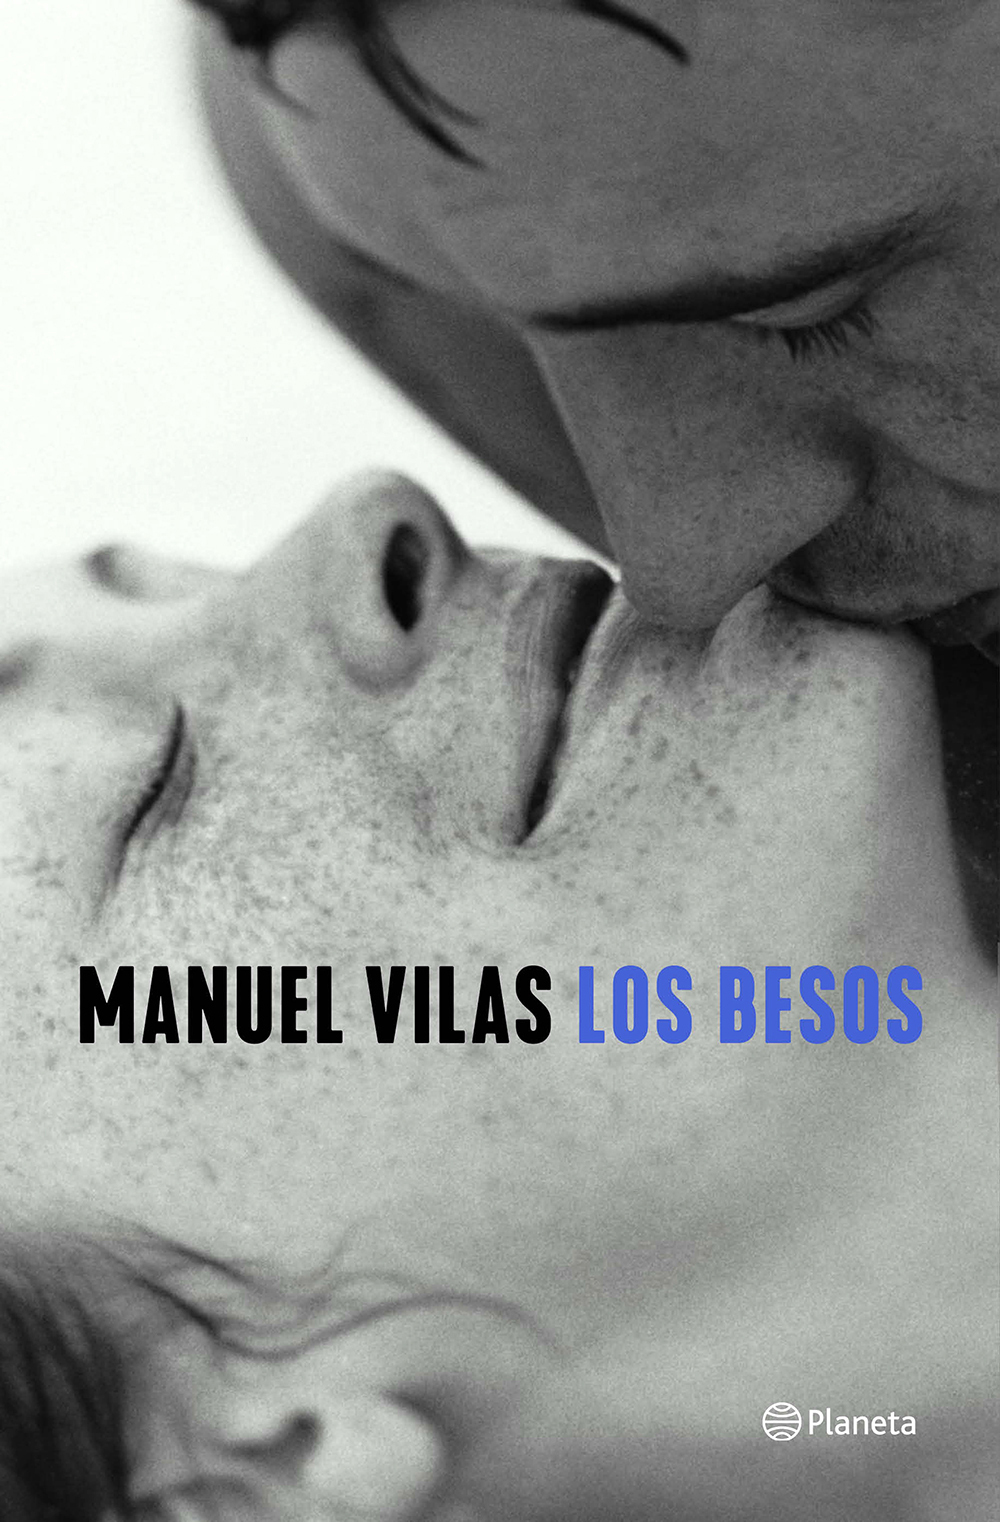 Los besos (Manuel Vilas, 2021) 